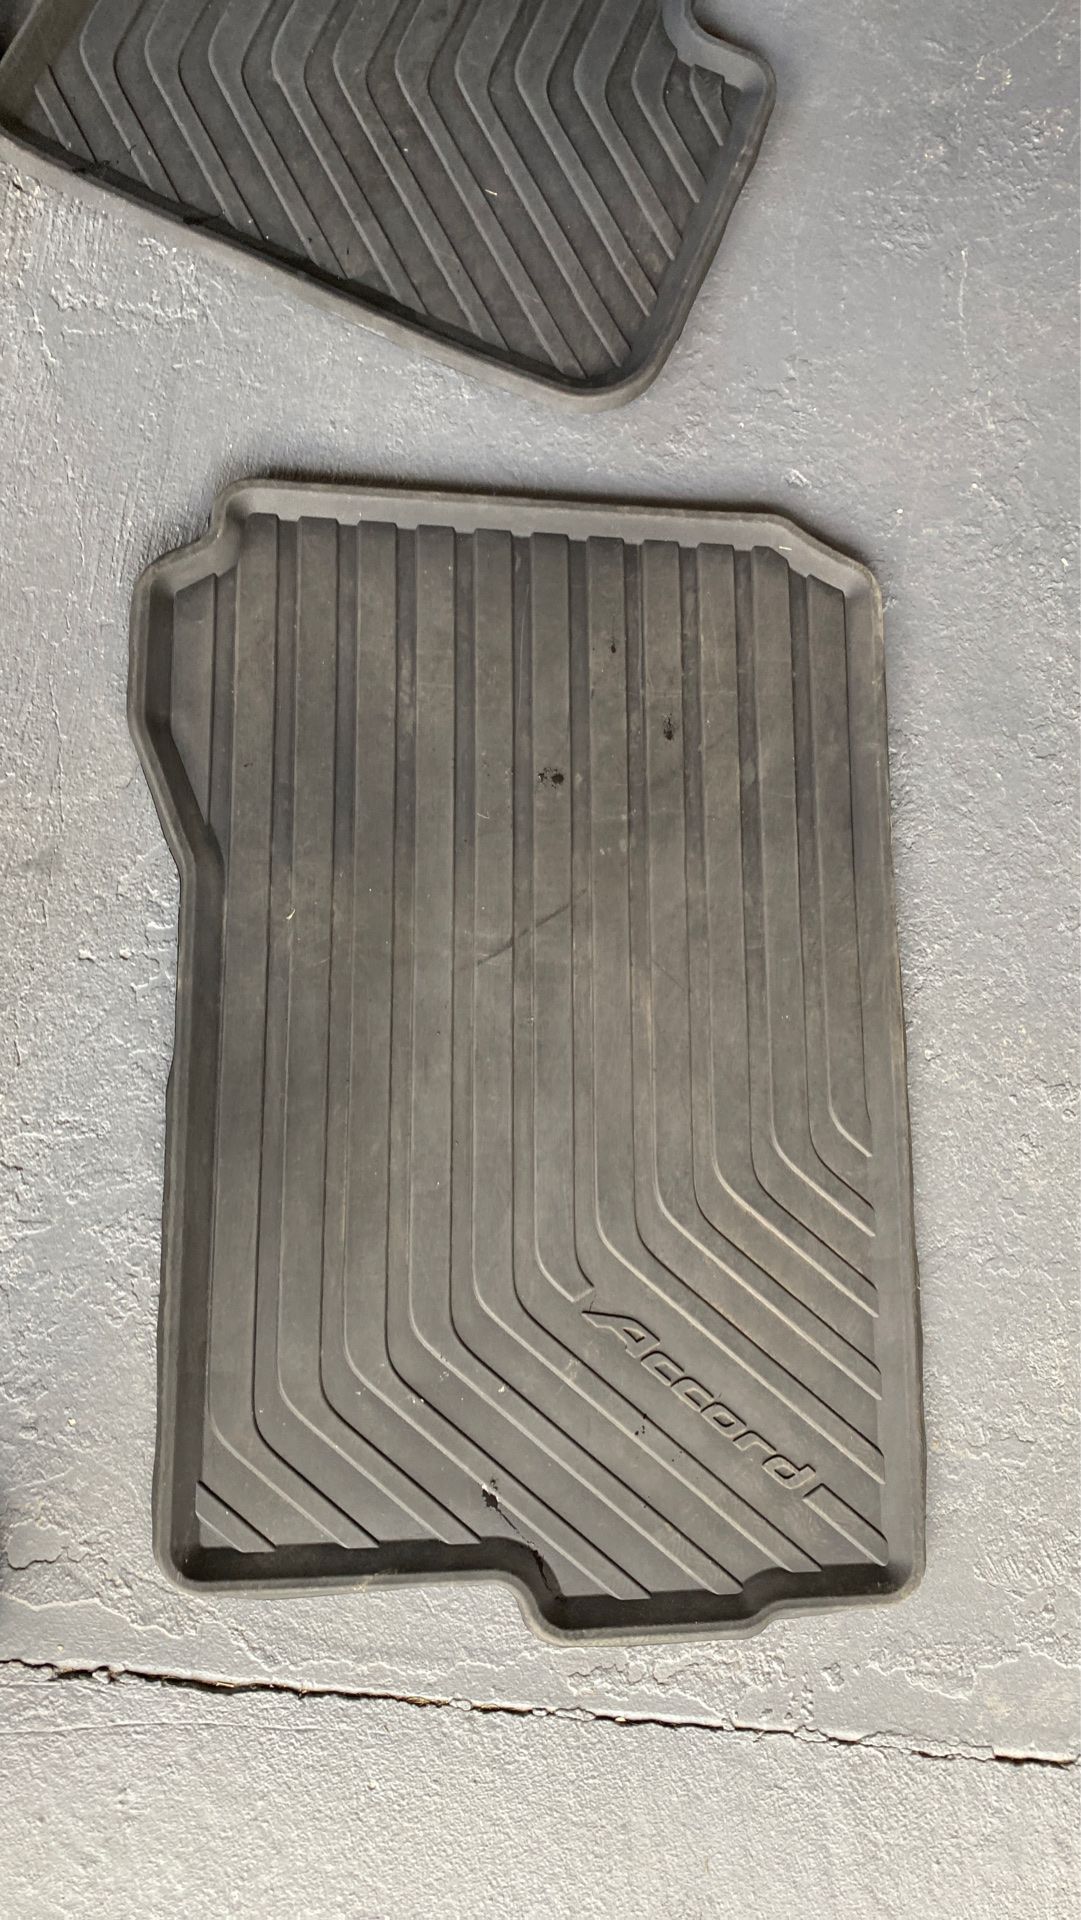 2016 Honda Accord floor matts